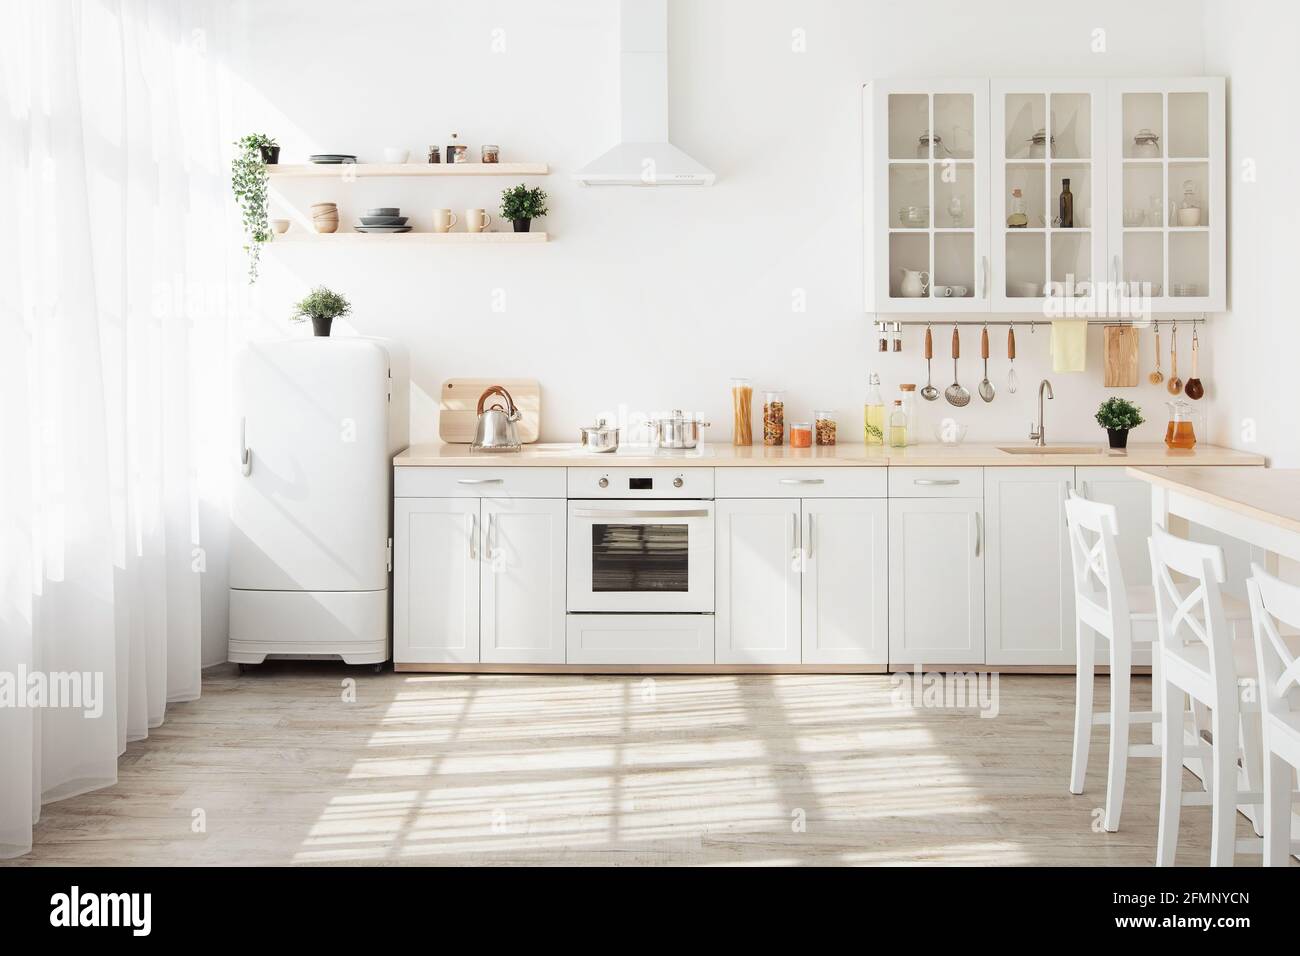 https://c8.alamy.com/compes/2fmnycn/cocina-con-paredes-claras-muebles-blancos-y-una-pequena-nevera-en-el-comedor-de-diseno-escandinavo-2fmnycn.jpg